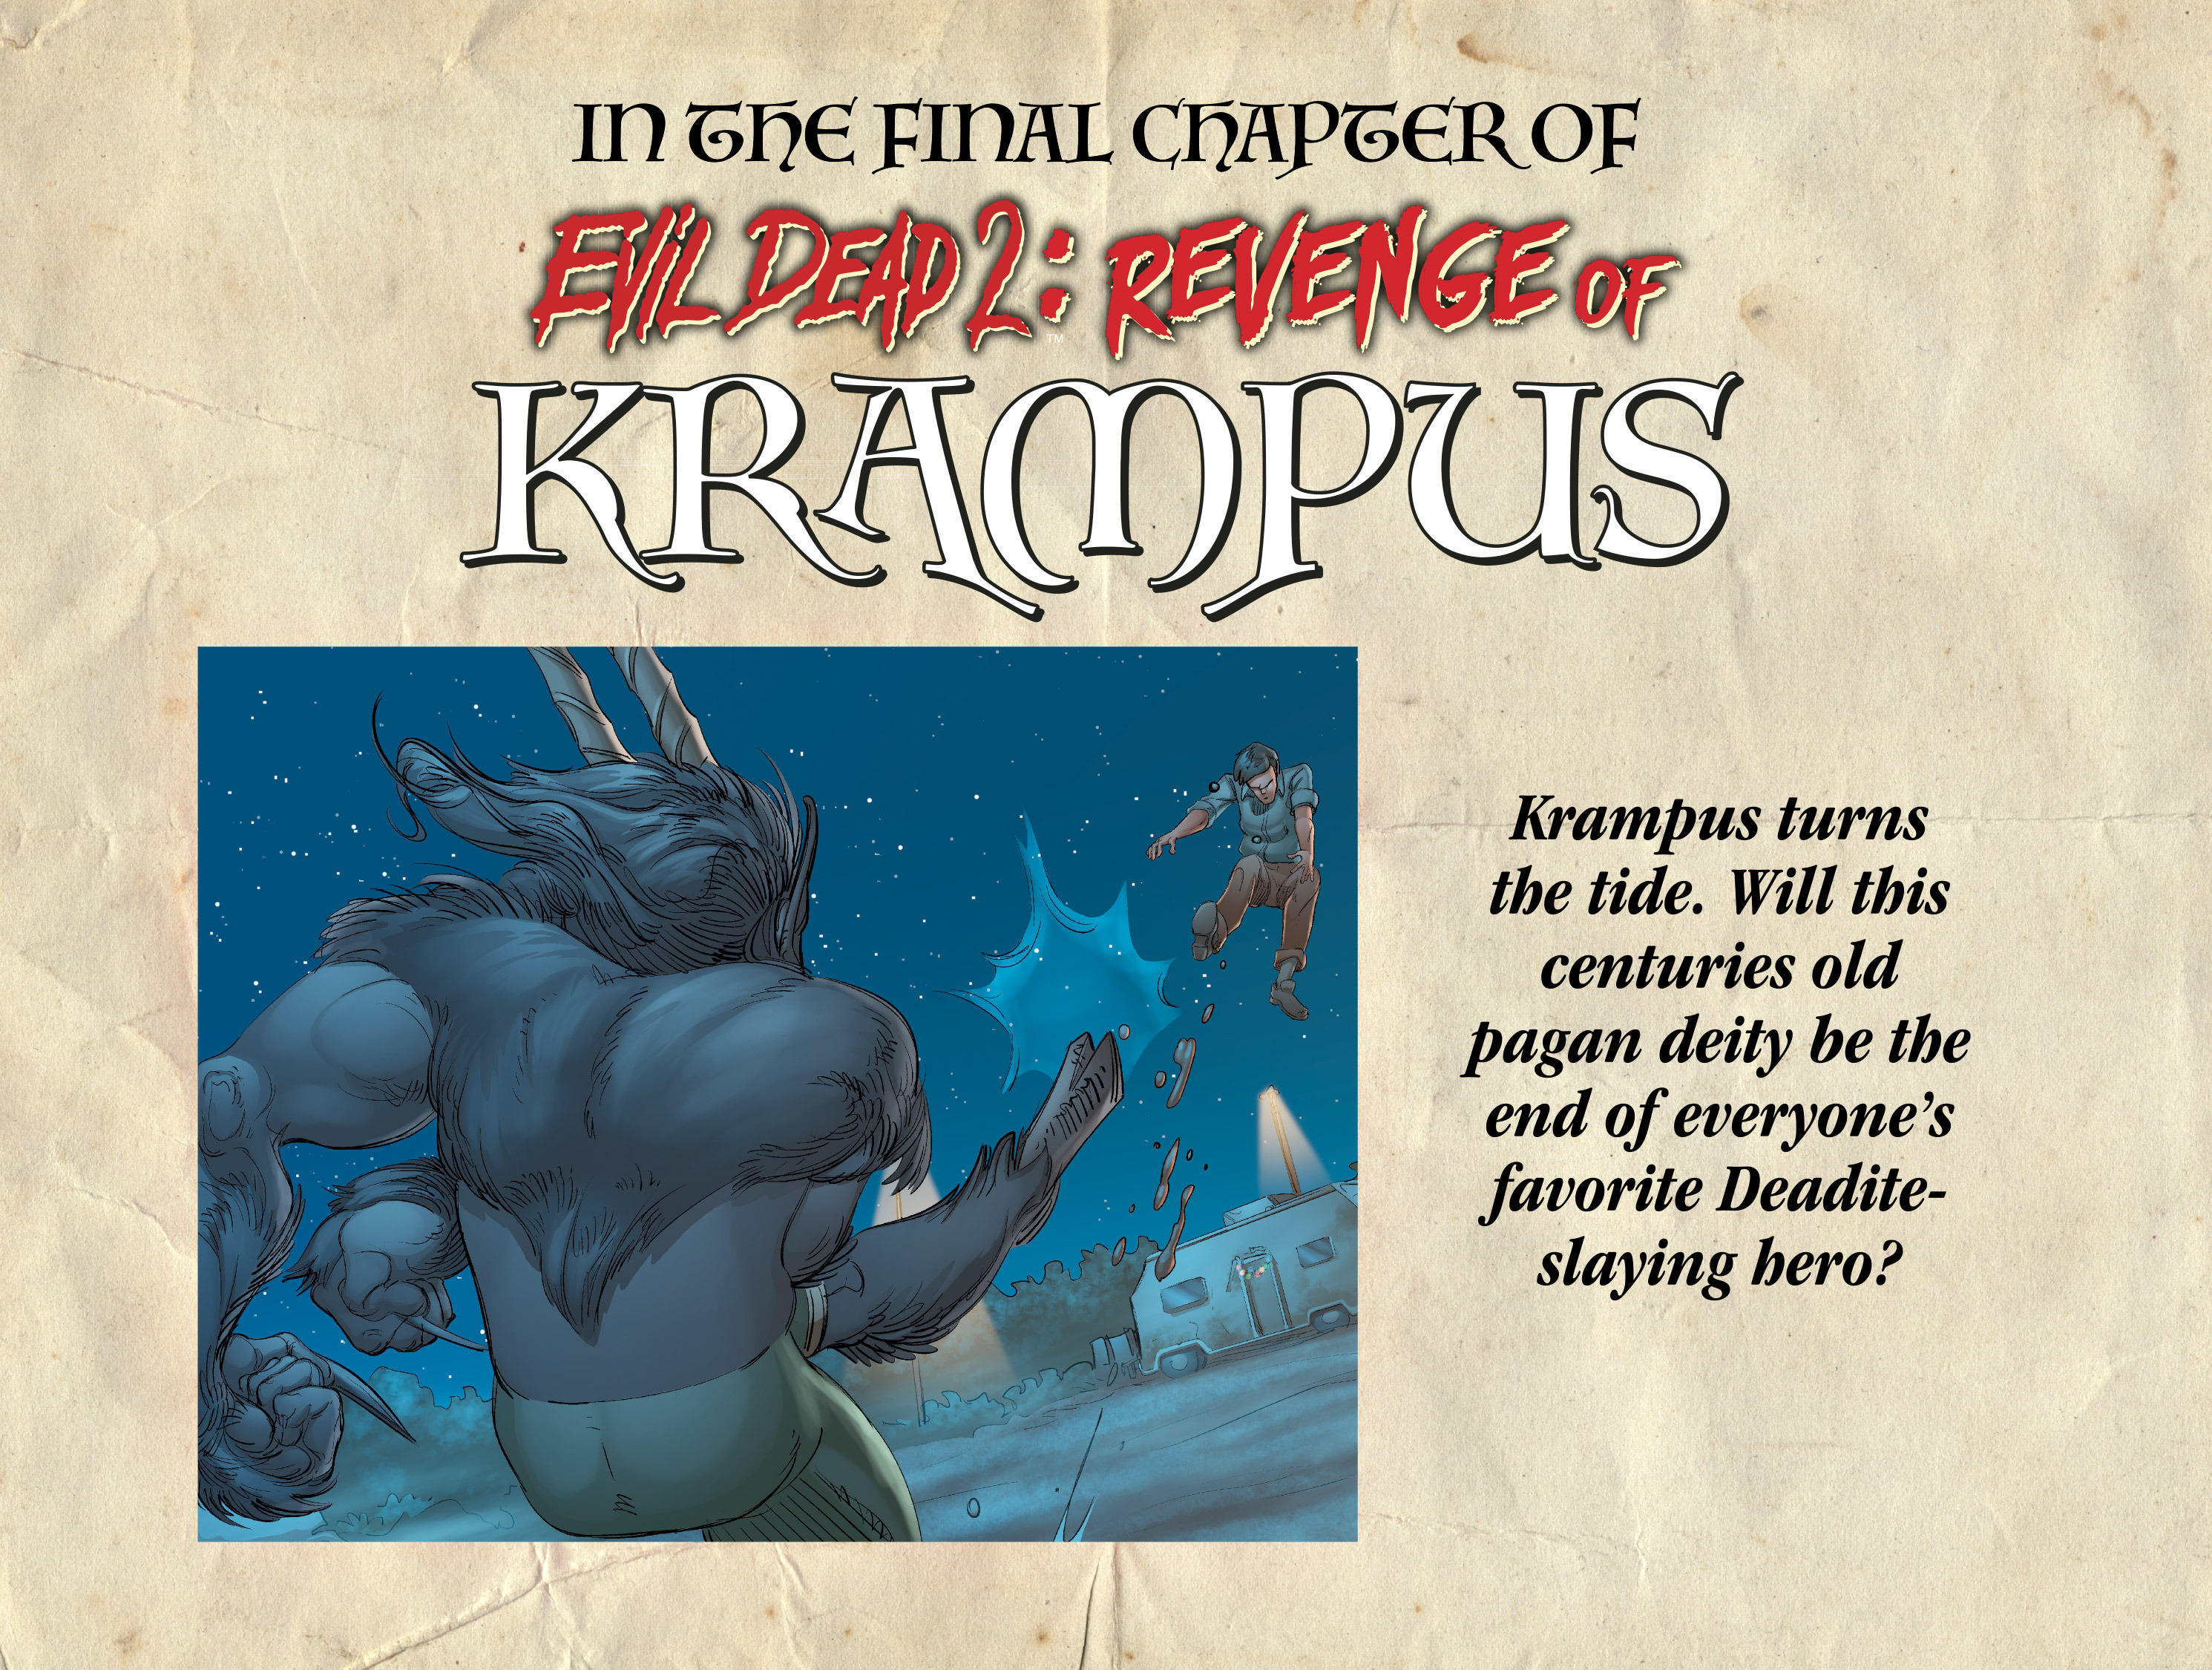 Read online Evil Dead 2: Revenge of Krampus comic -  Issue #1 - 23